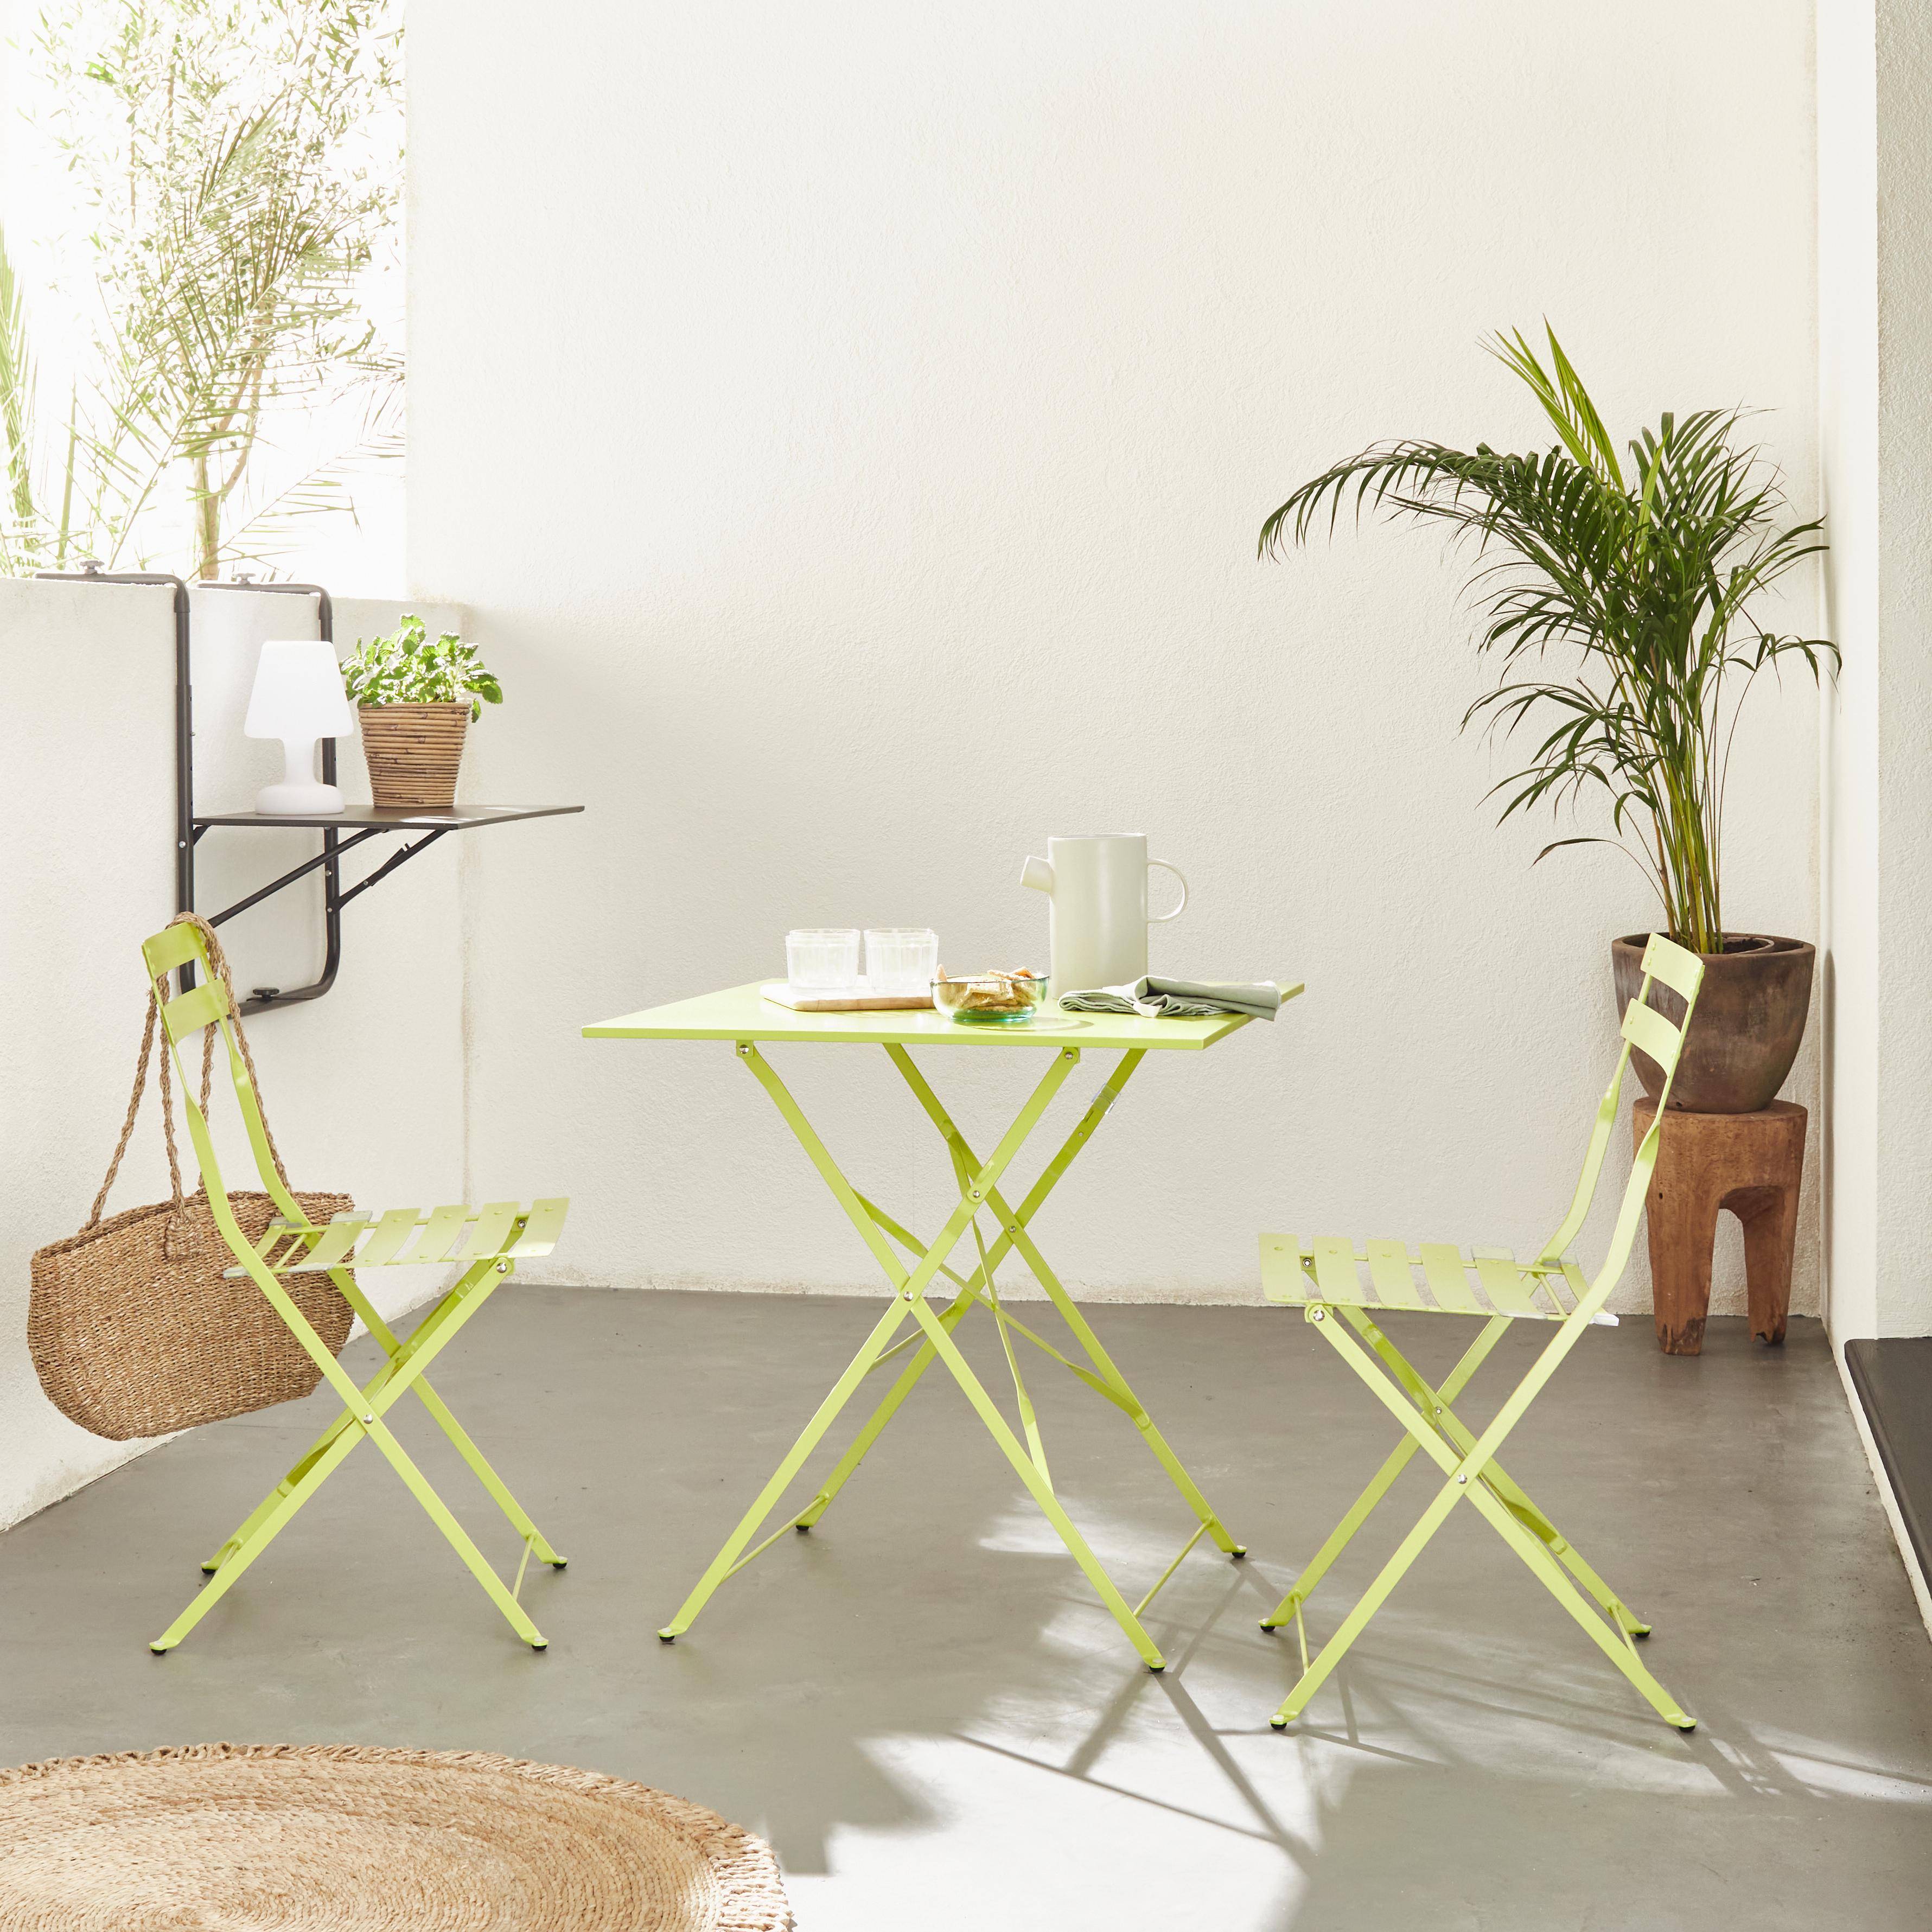 Klappbare Bistro-Gartenmöbel - Emilia quadratisch grün - Quadratischer Tisch 70x70 cm mit zwei Klappstühlen, pulverbeschichtetem Stahl, Stühlen mit gebogenen Latten Photo1